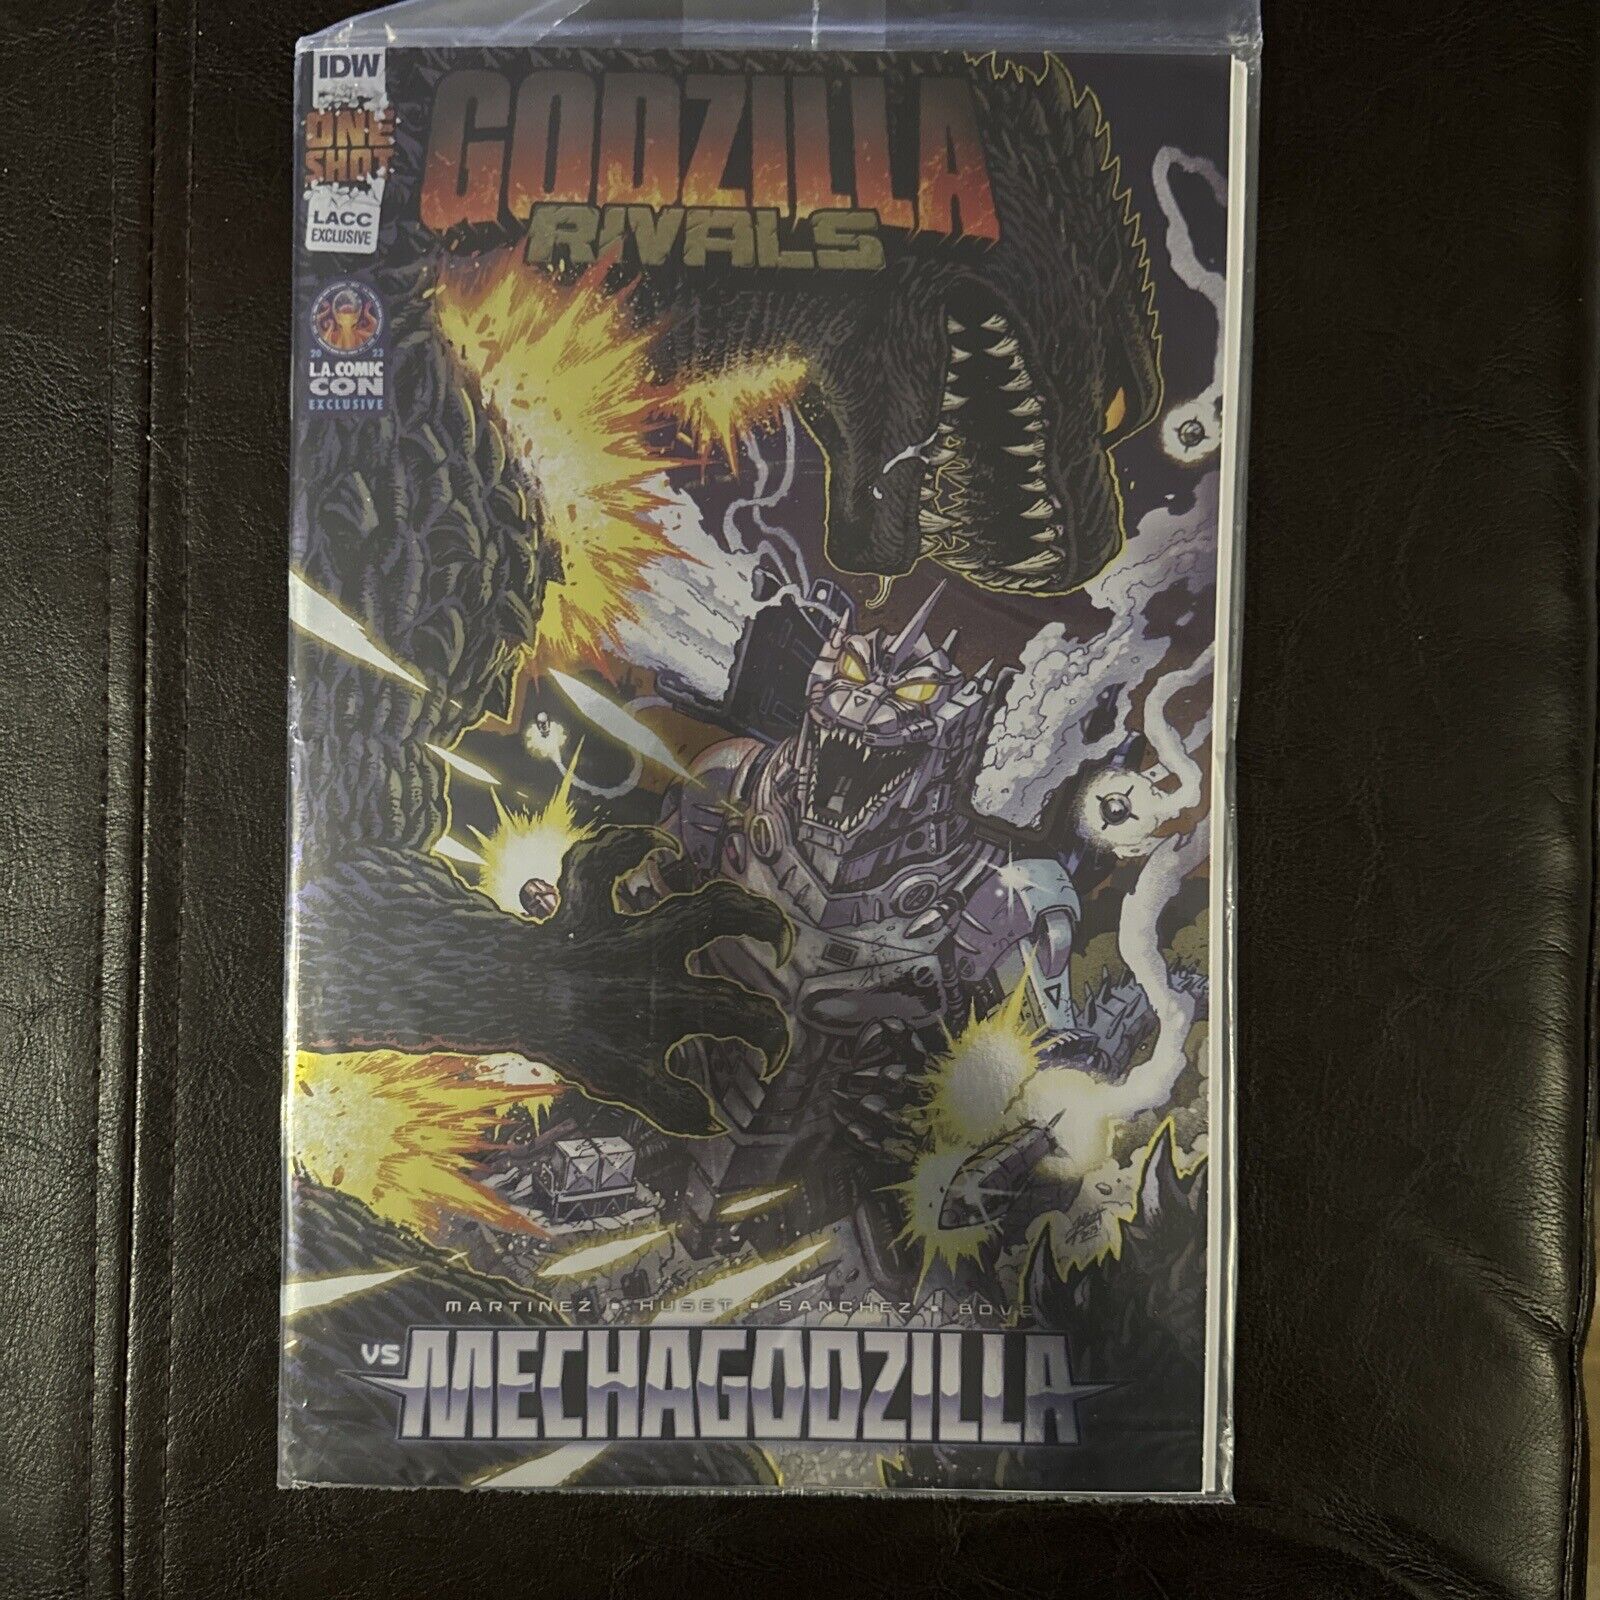 Godzilla Rivals vs Mechagodzilla FOIL LACC LA Comic Con EXCLUSIVE LTD 500